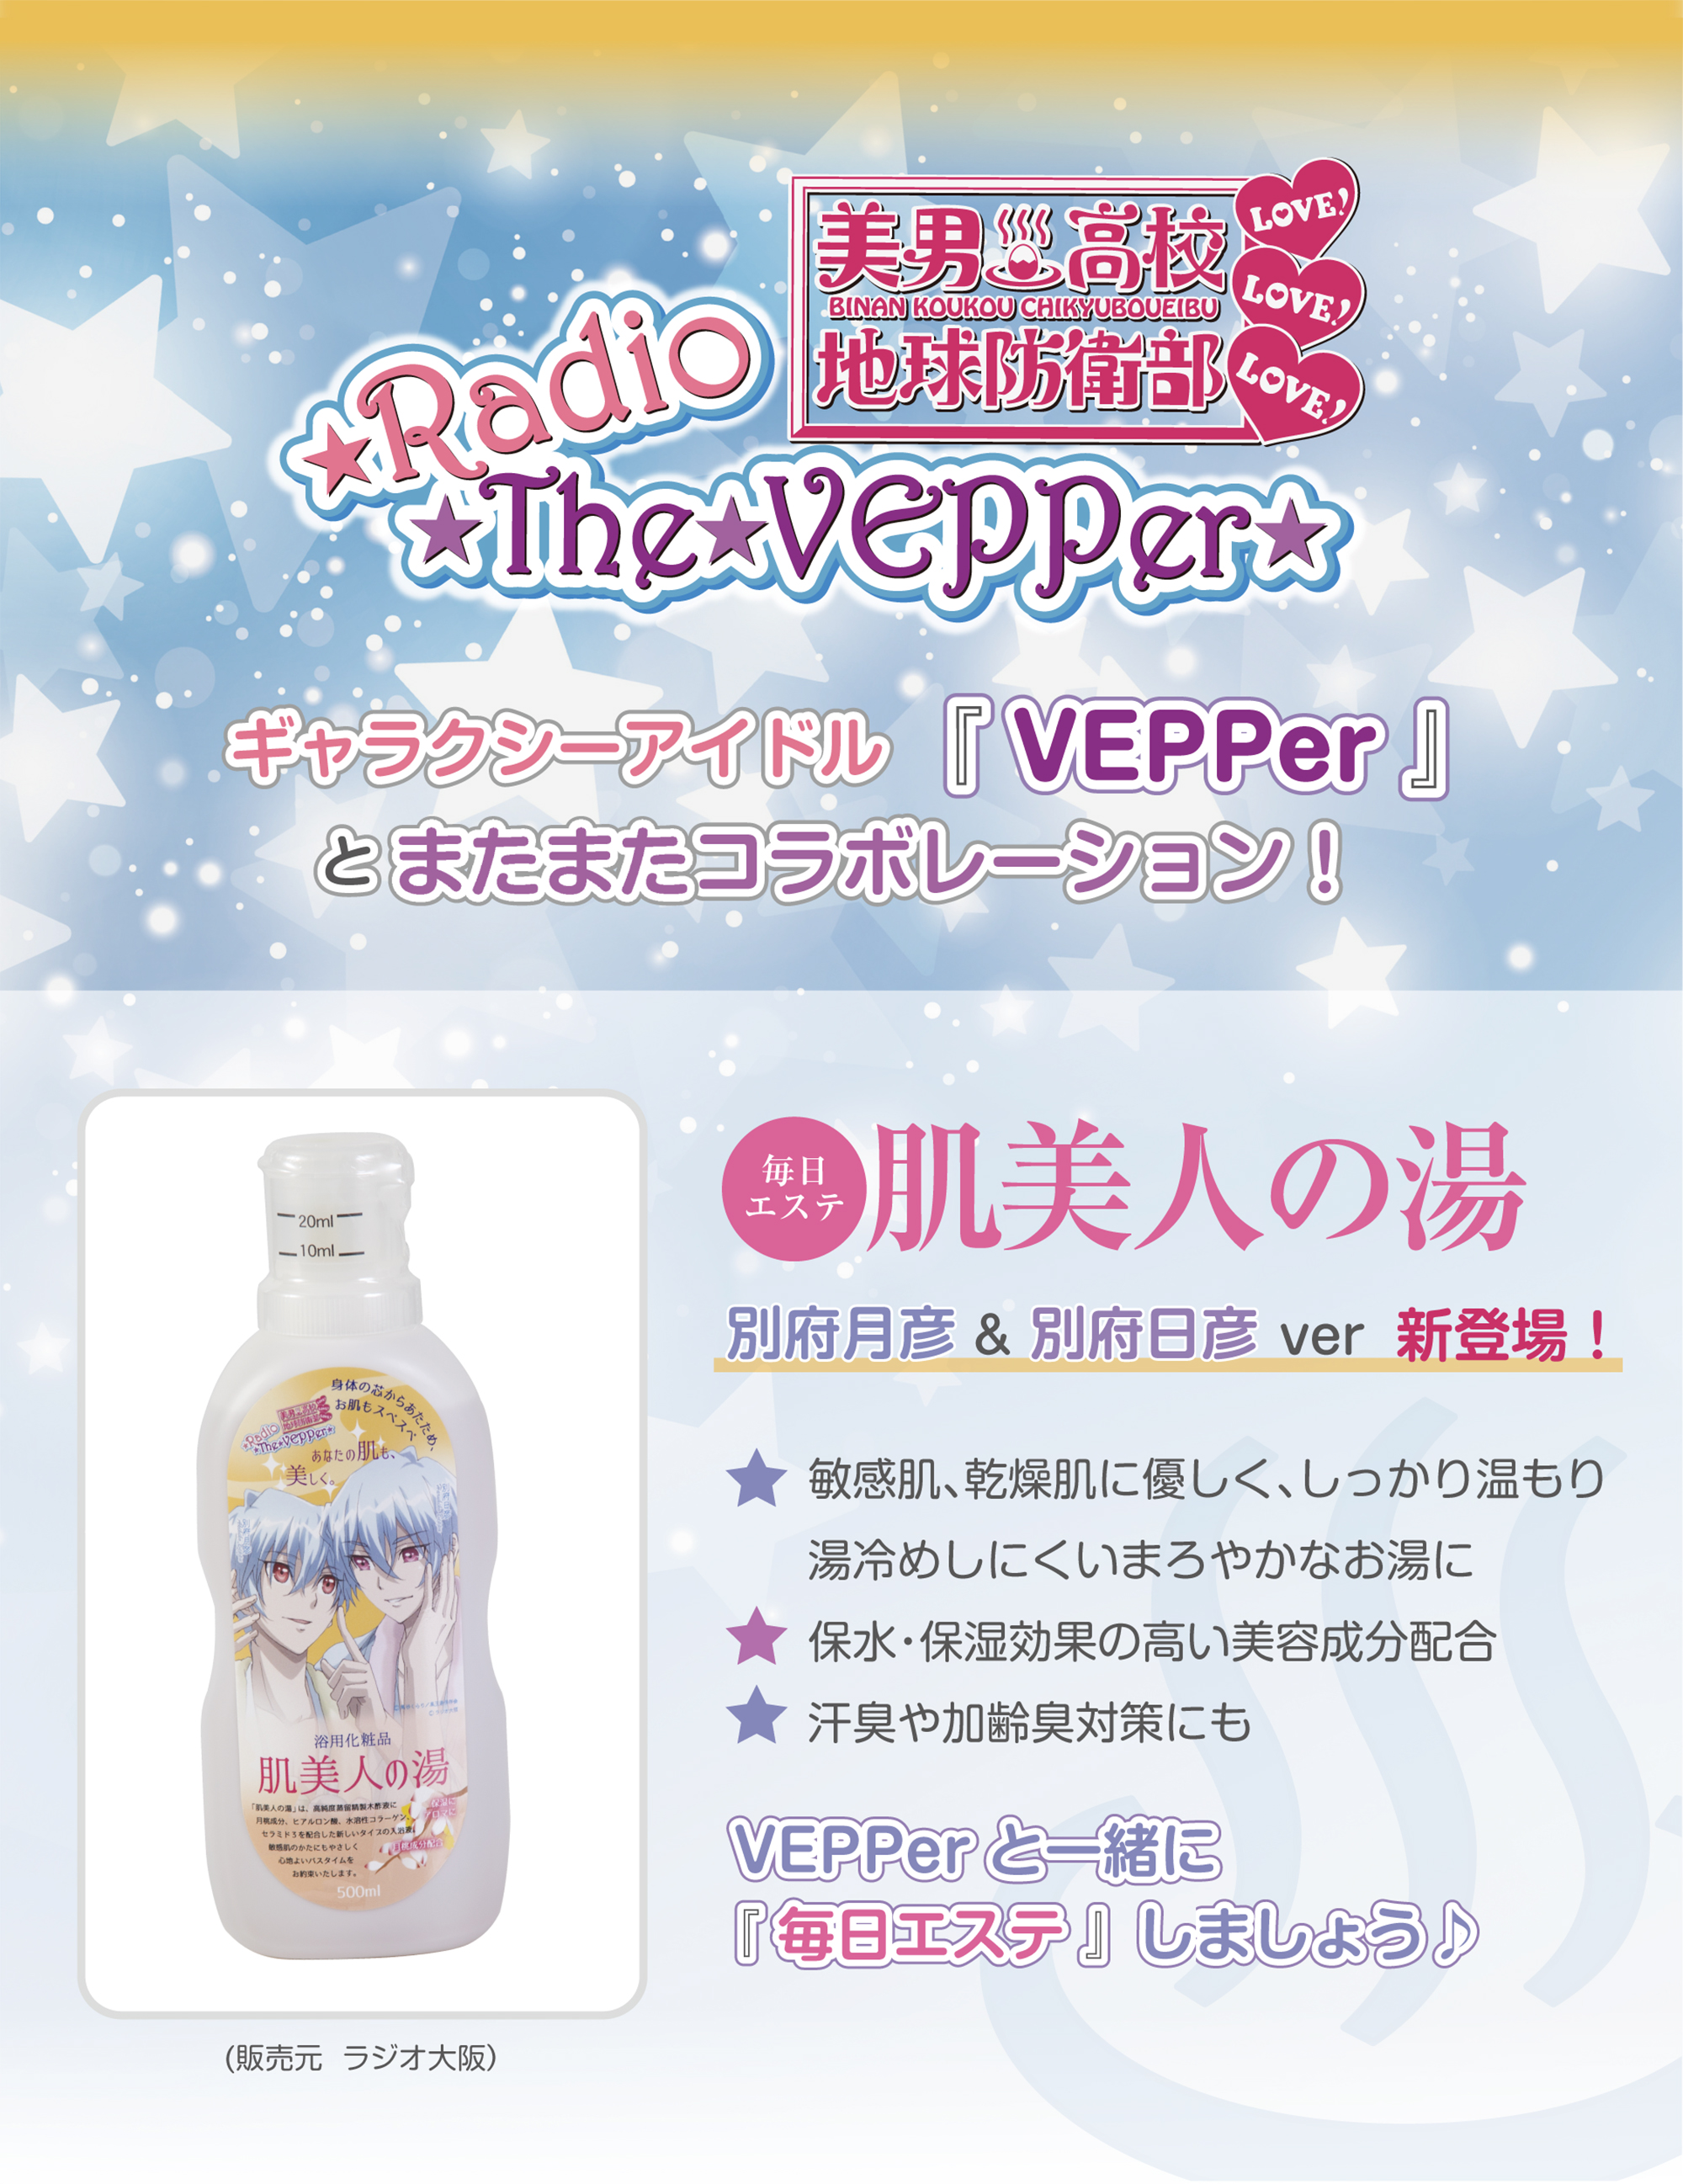 「美男高校地球防衛部LOVE!LOVE!LOVE!」のギャラクシーアイドル「VEPPer」による特別仕様！